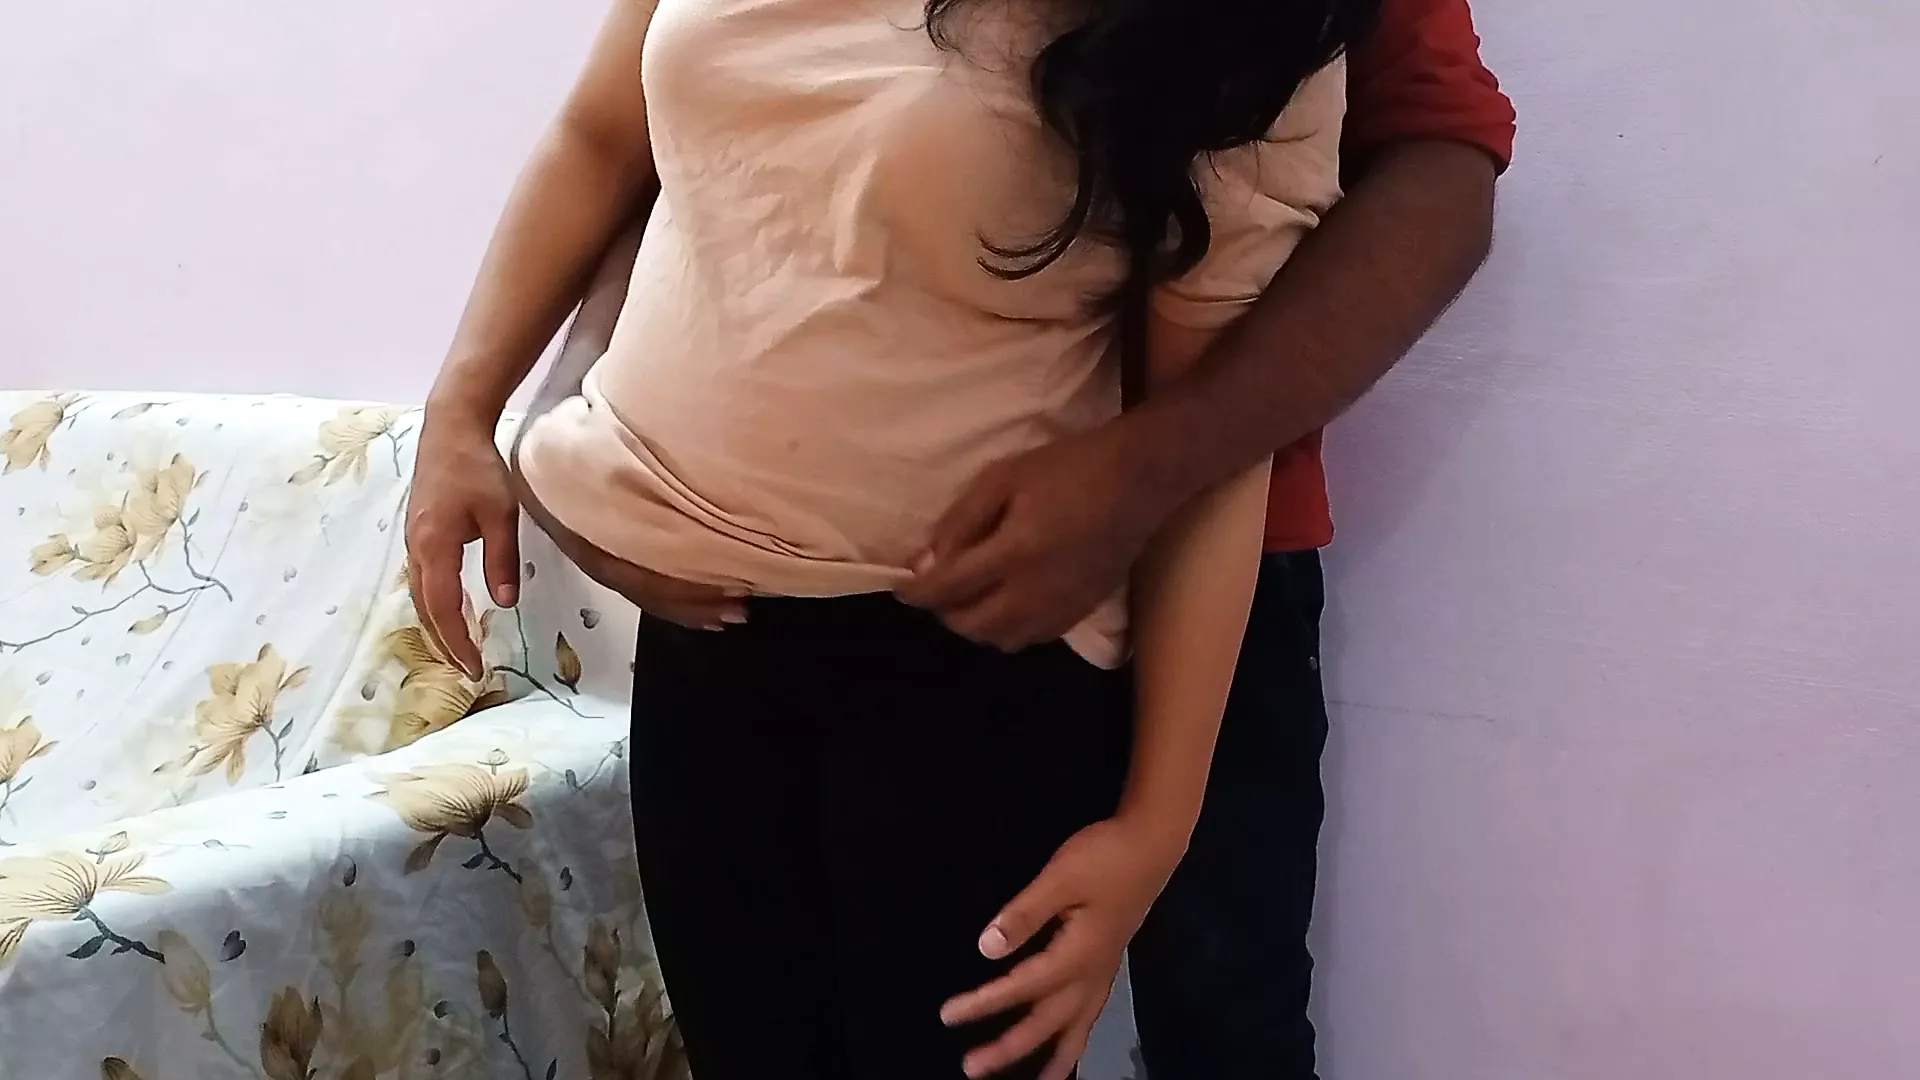 Asian Mom Porn Facebook - Nepali Bhabhi Ko Facebook Par Pata Kar Khub Choda watch online